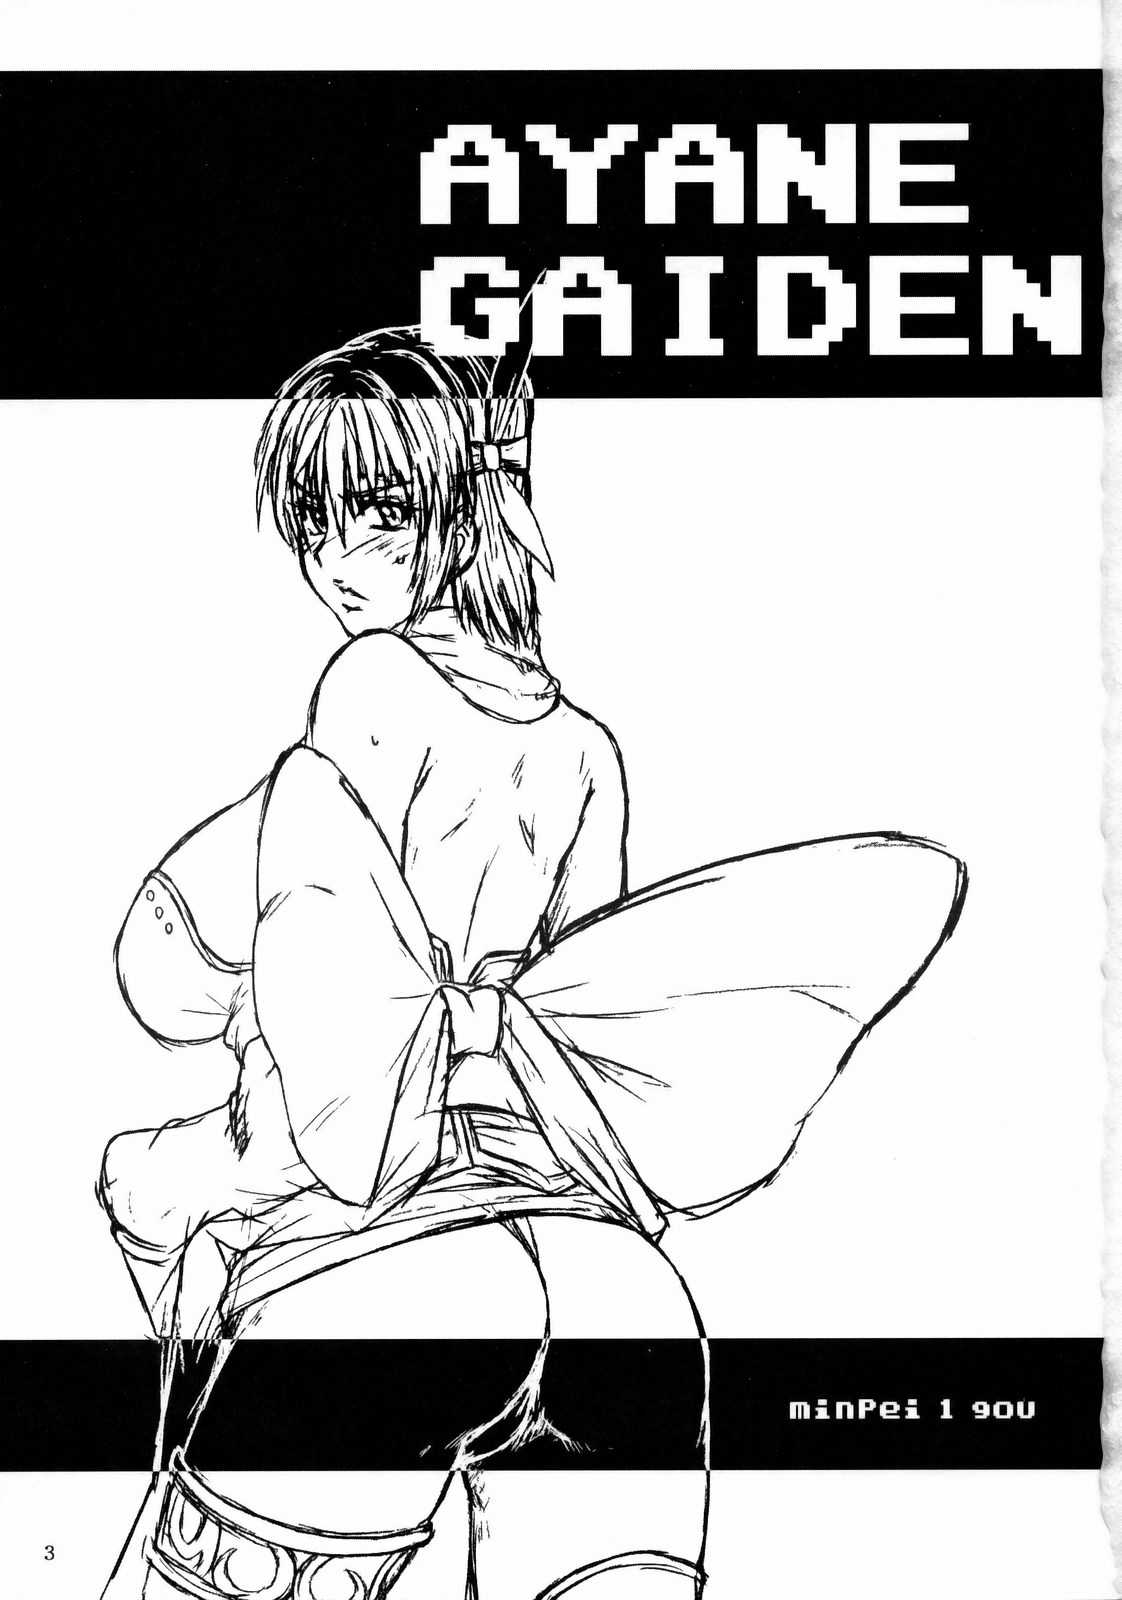 (C77) [Dashigara 100% (Minpei Ichigo)] Ayane Gaiden (Dead or Alive) (C77) (同人誌) [ダシガラ100% (民兵一号)] あやね外伝 (Dead or Alive)